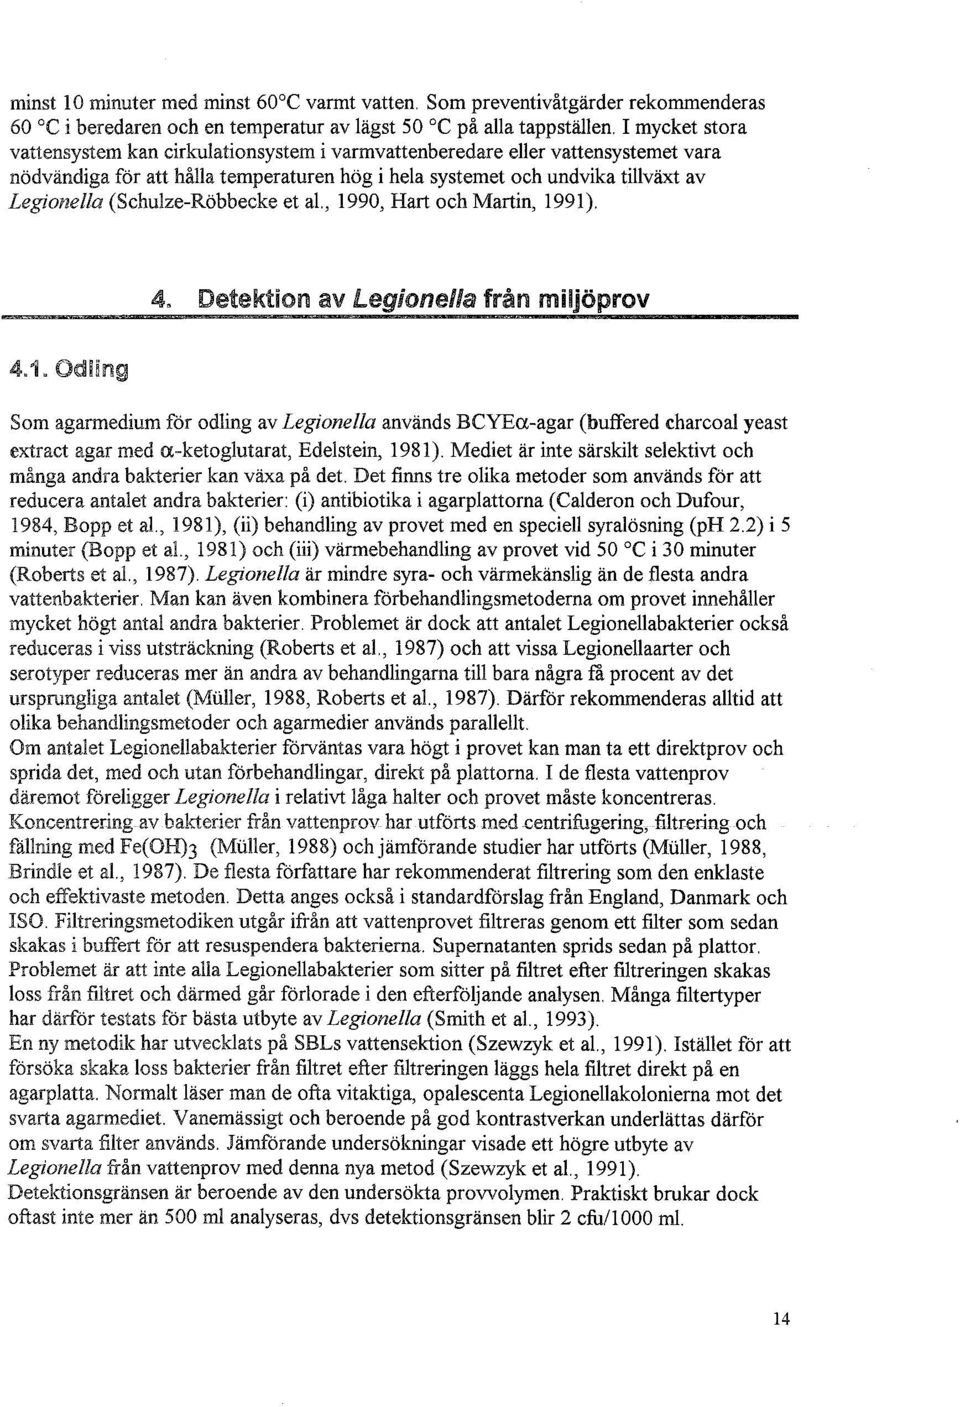 (Schulze-Röbbecke et al., 1990, Hart och Martin, 1991). 4. Detektion av Legionella från miljöprov 4.1. Odling Som agarmedium för odling av Legionella används BCYEa-agar (buffered charcoal yeast extract agar med a-ketoglutarat, Edelstein, 1981).